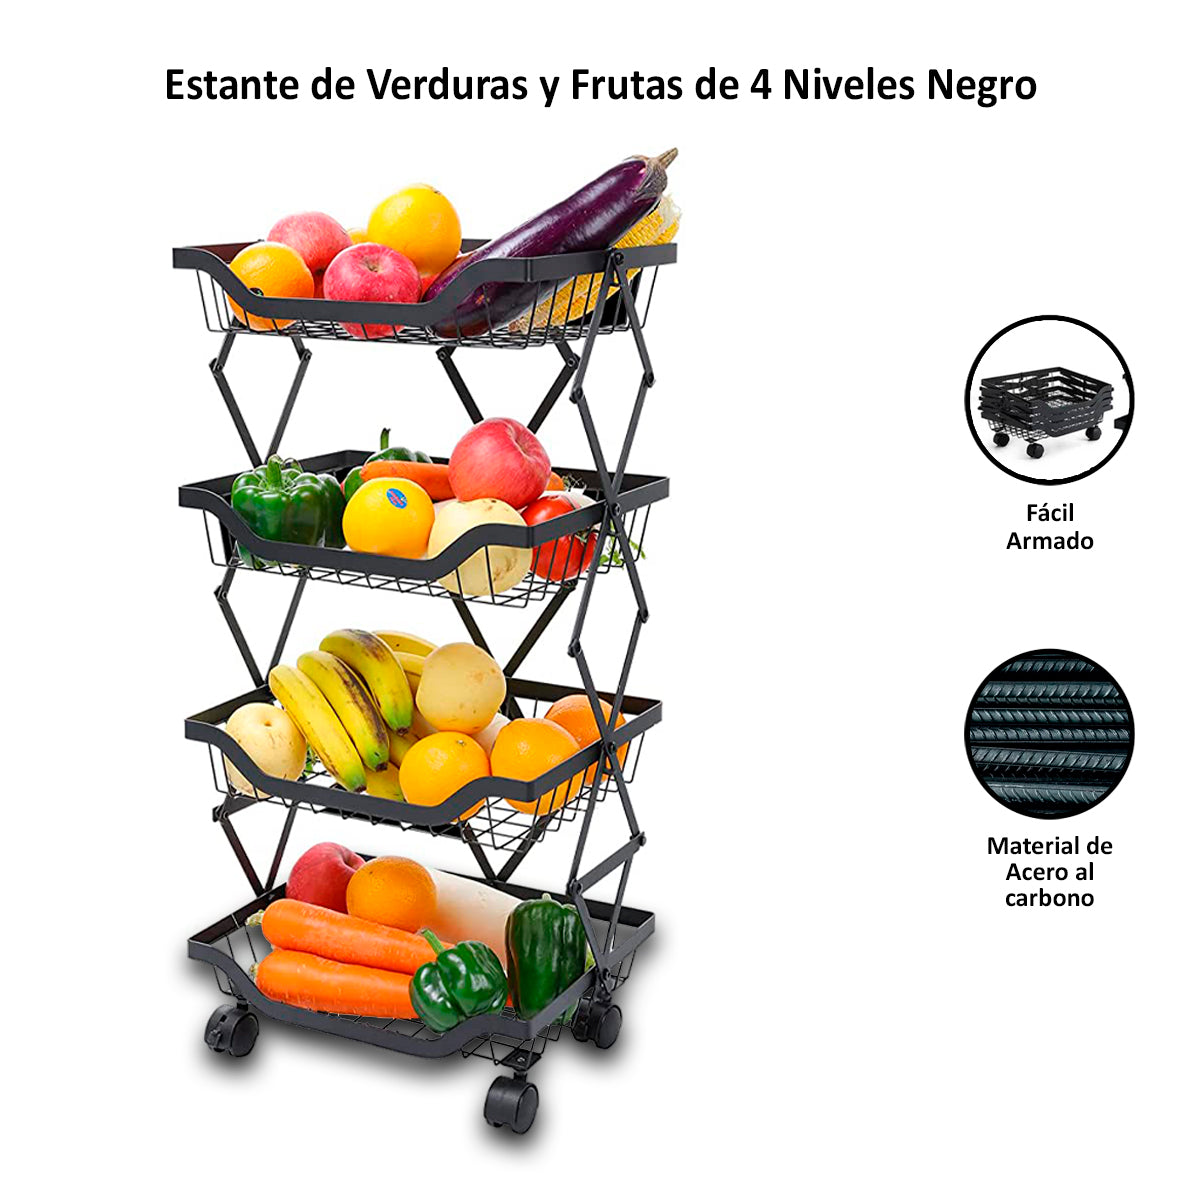 Estante de Verduras y Frutas de 4 Niveles